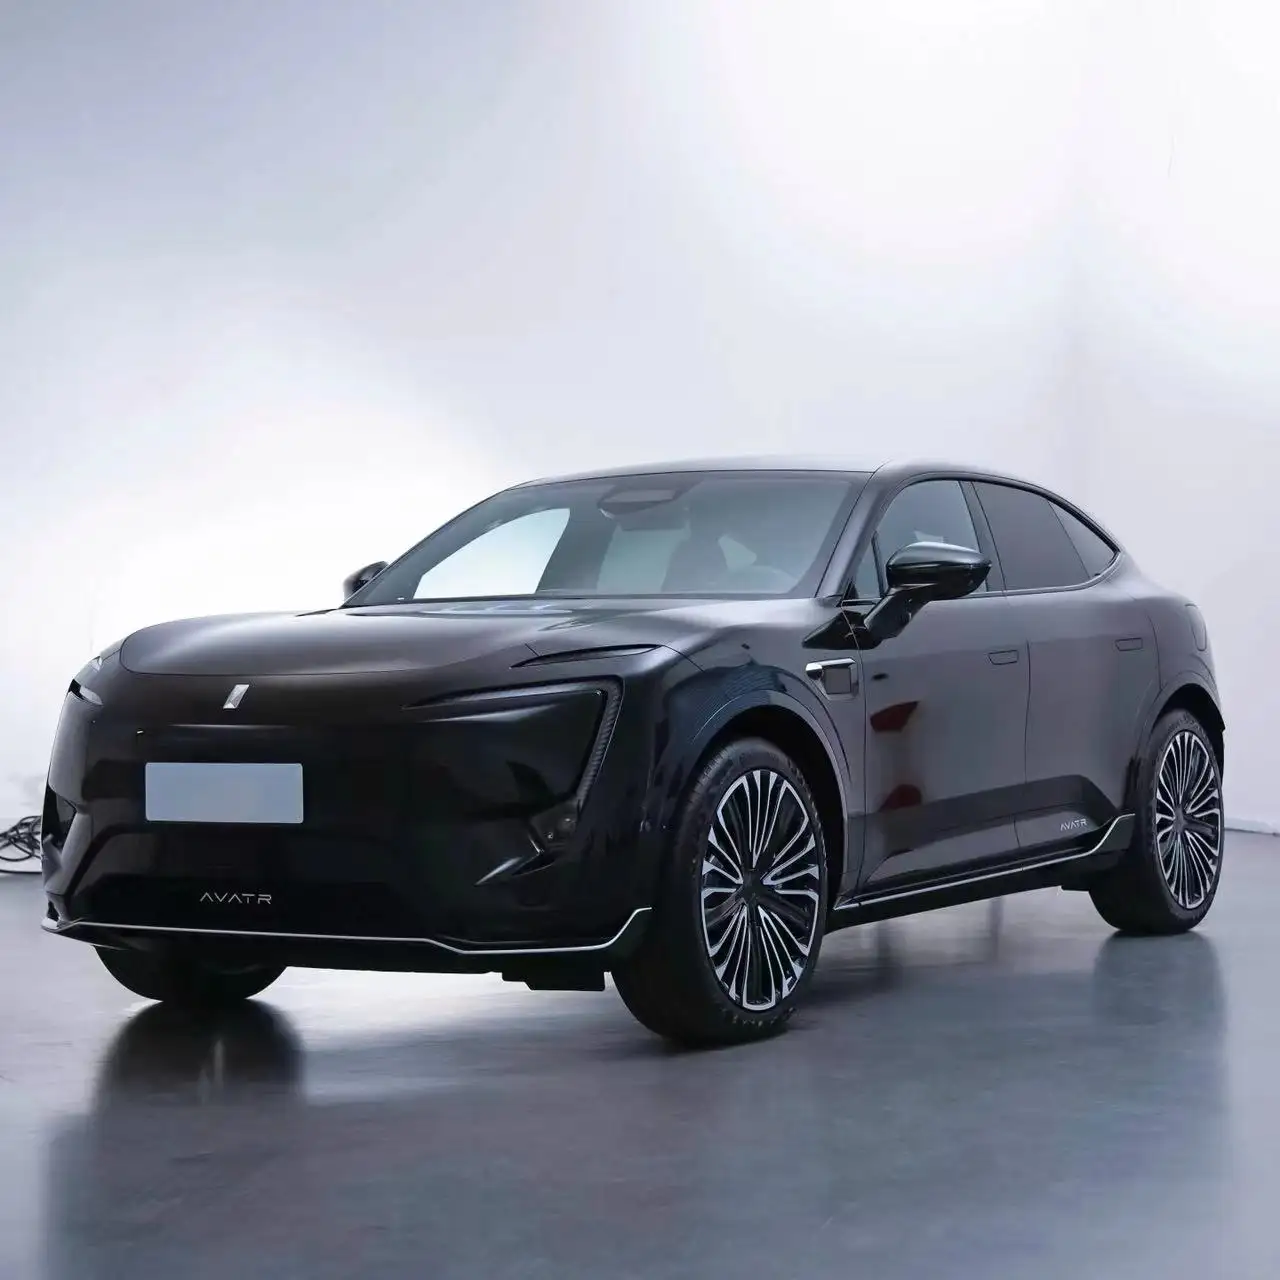 2024 अवेइता 11 इलेक्ट्रिक वाहन लंबी दूरी की नई ऊर्जा कारें लक्जरी एसयूवी हुआ वी एवाटर 11 हाई स्पीड इलेक्ट्रिक कार